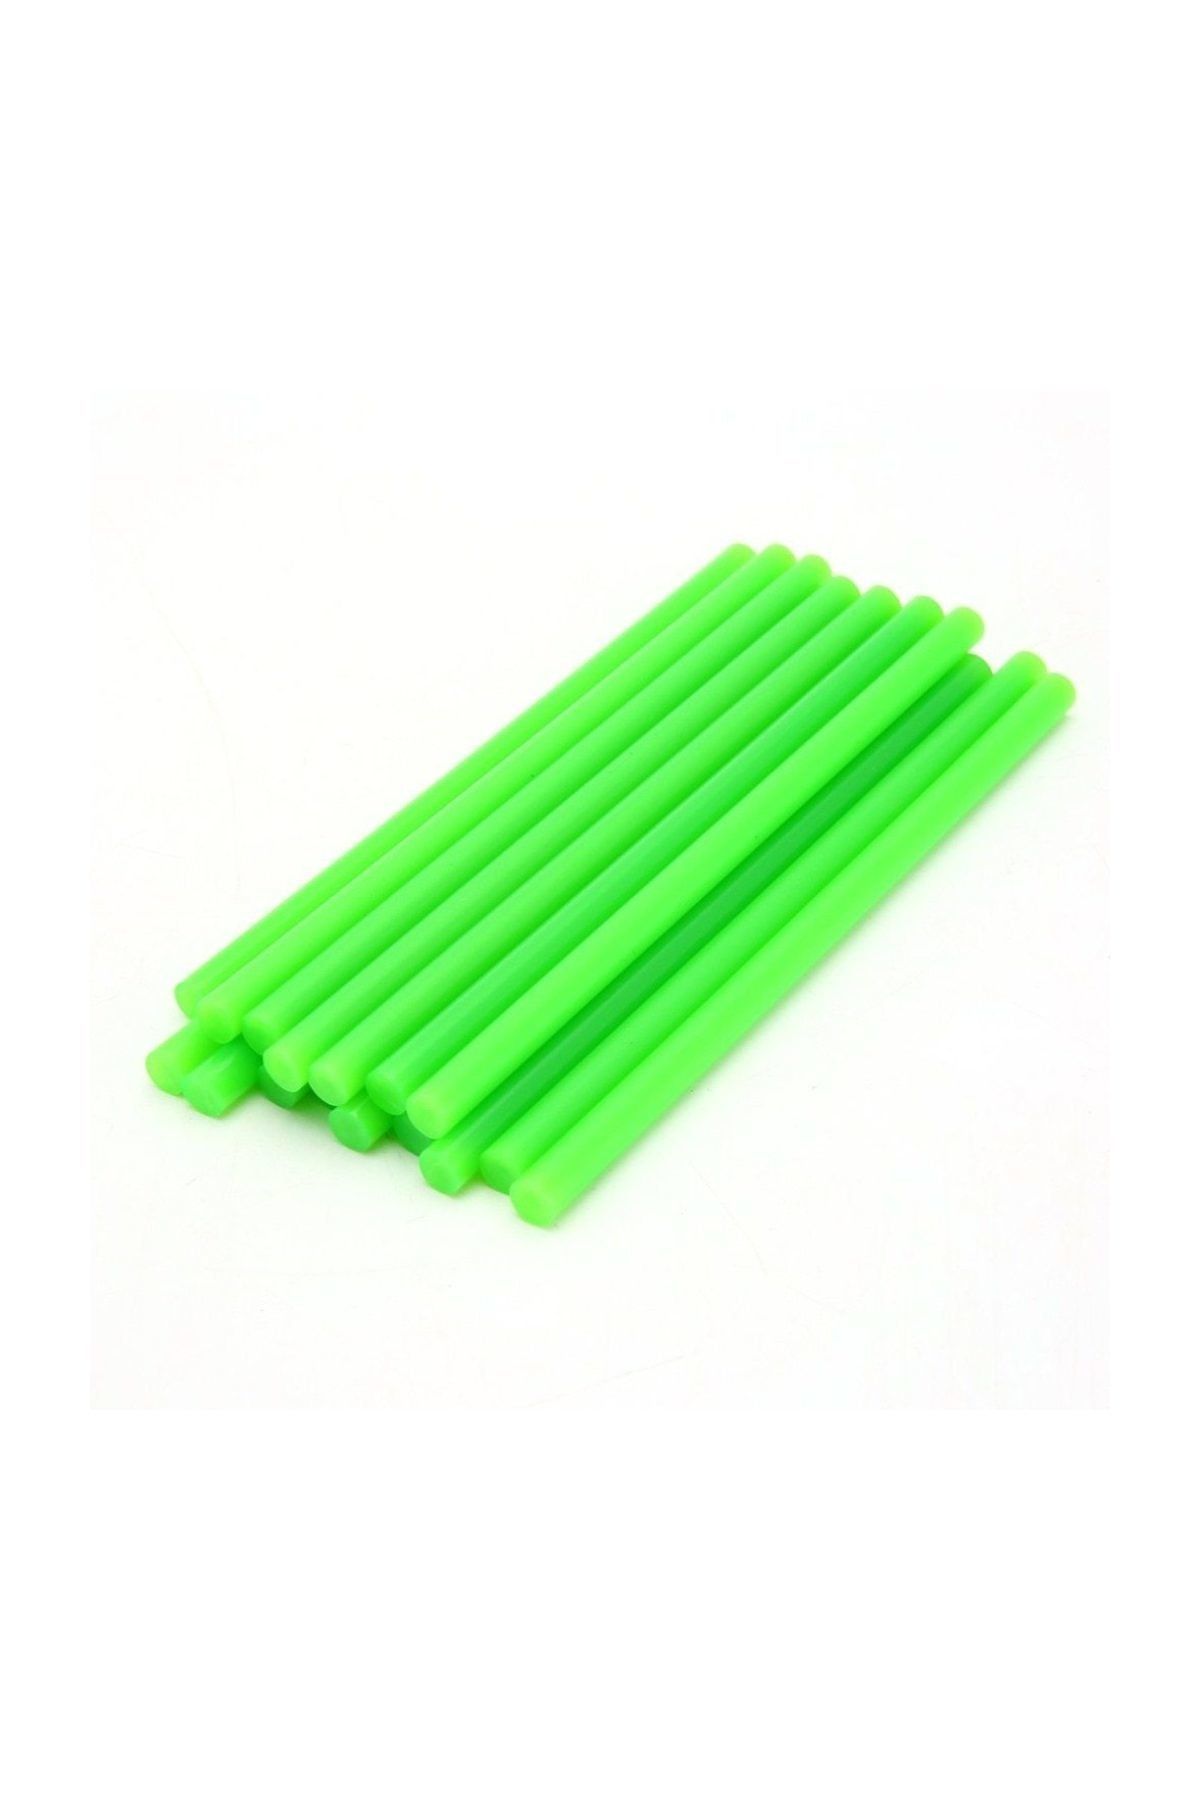 Xolo Renkli 11 mm Kalın Sıcak Mum Silikon Çubuk 1 KG Açık Yeşil